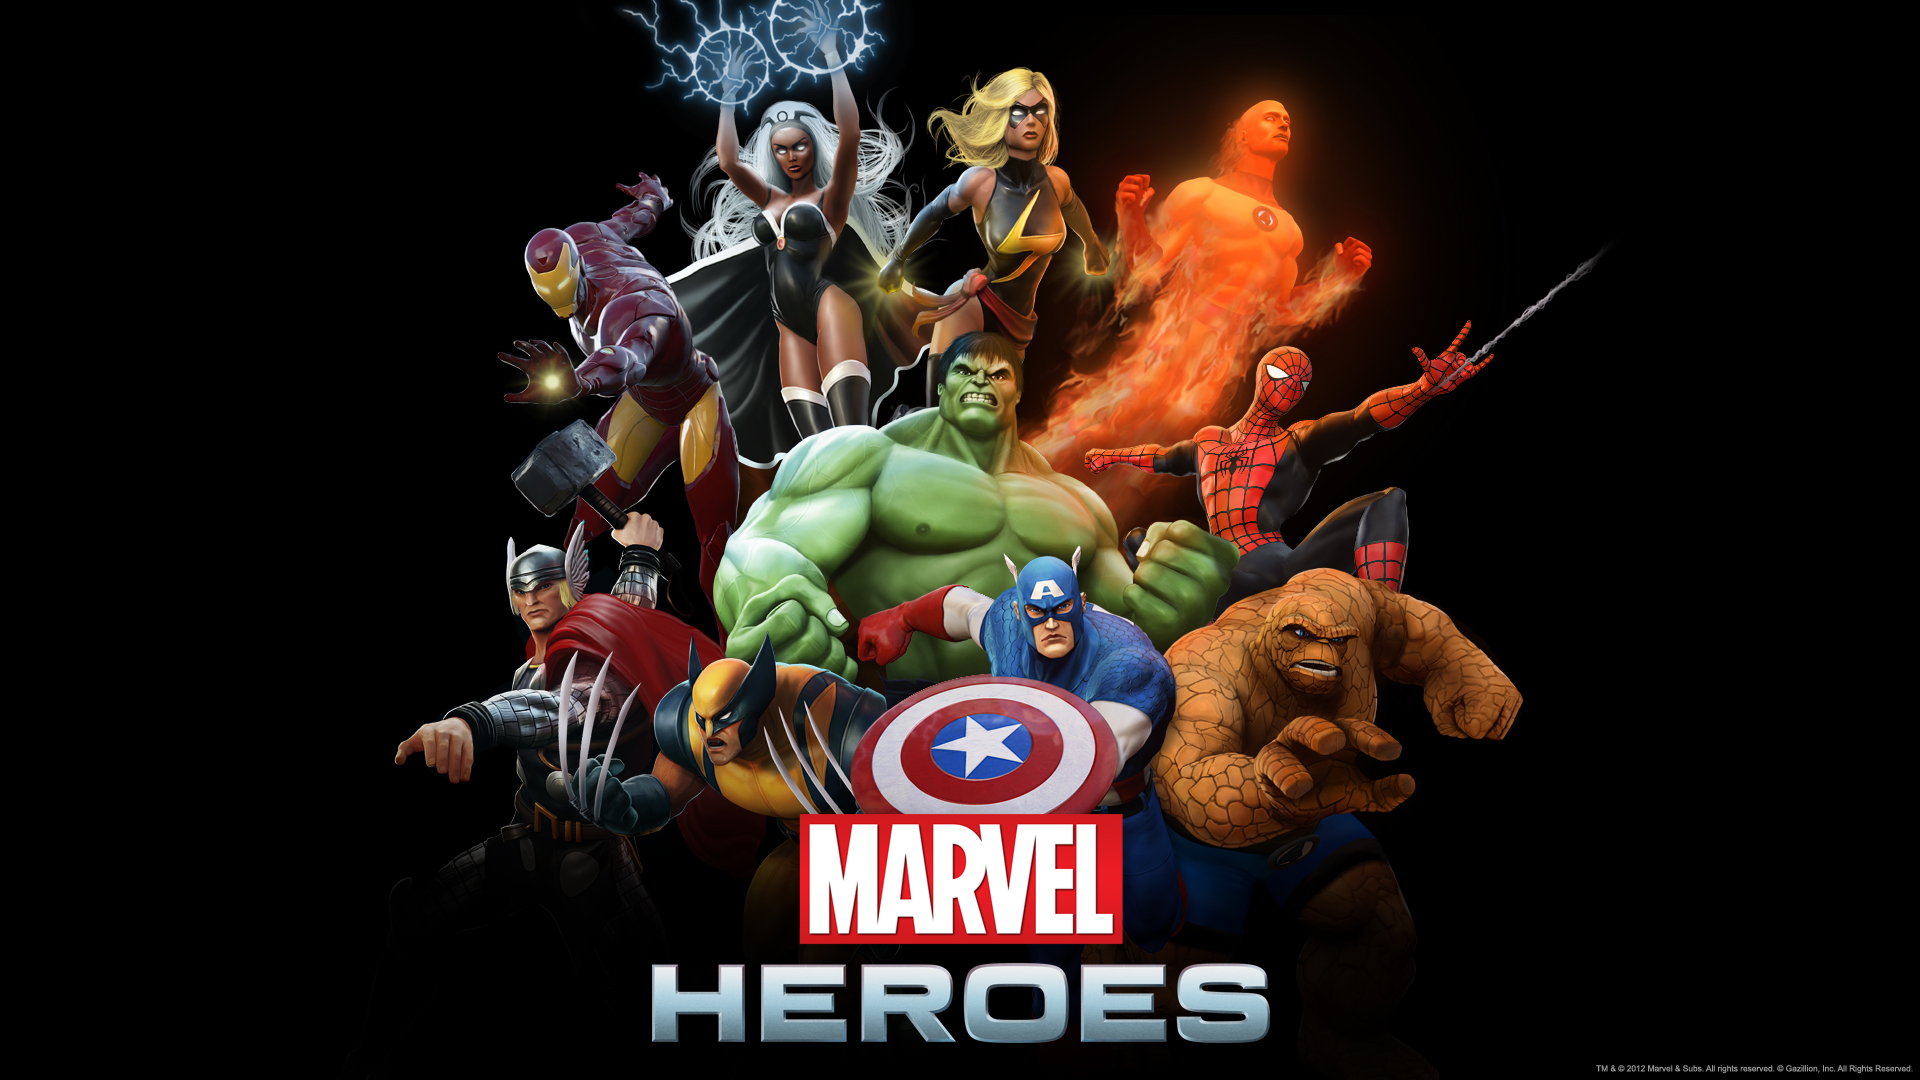 Epic Marvel Heroes Wallpapers   SlotsMarvel